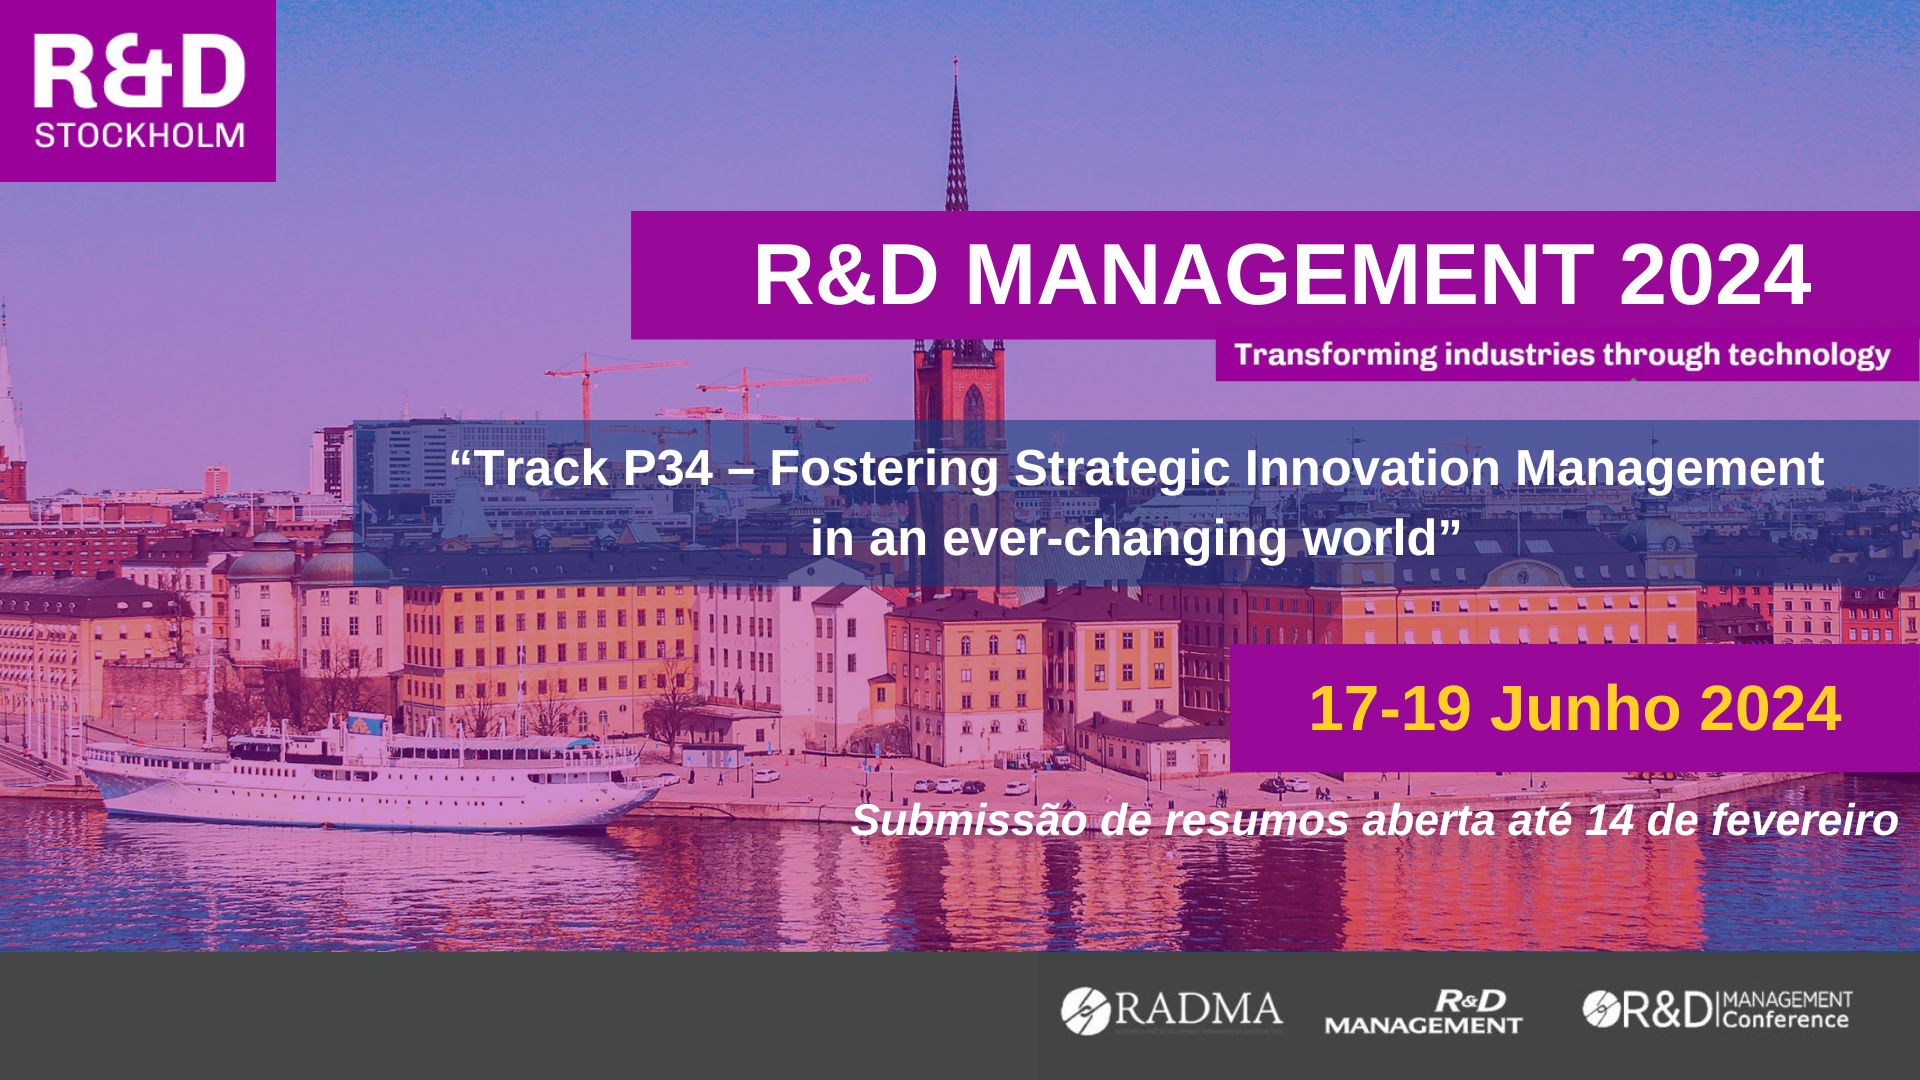 R&D Management Conference 2024